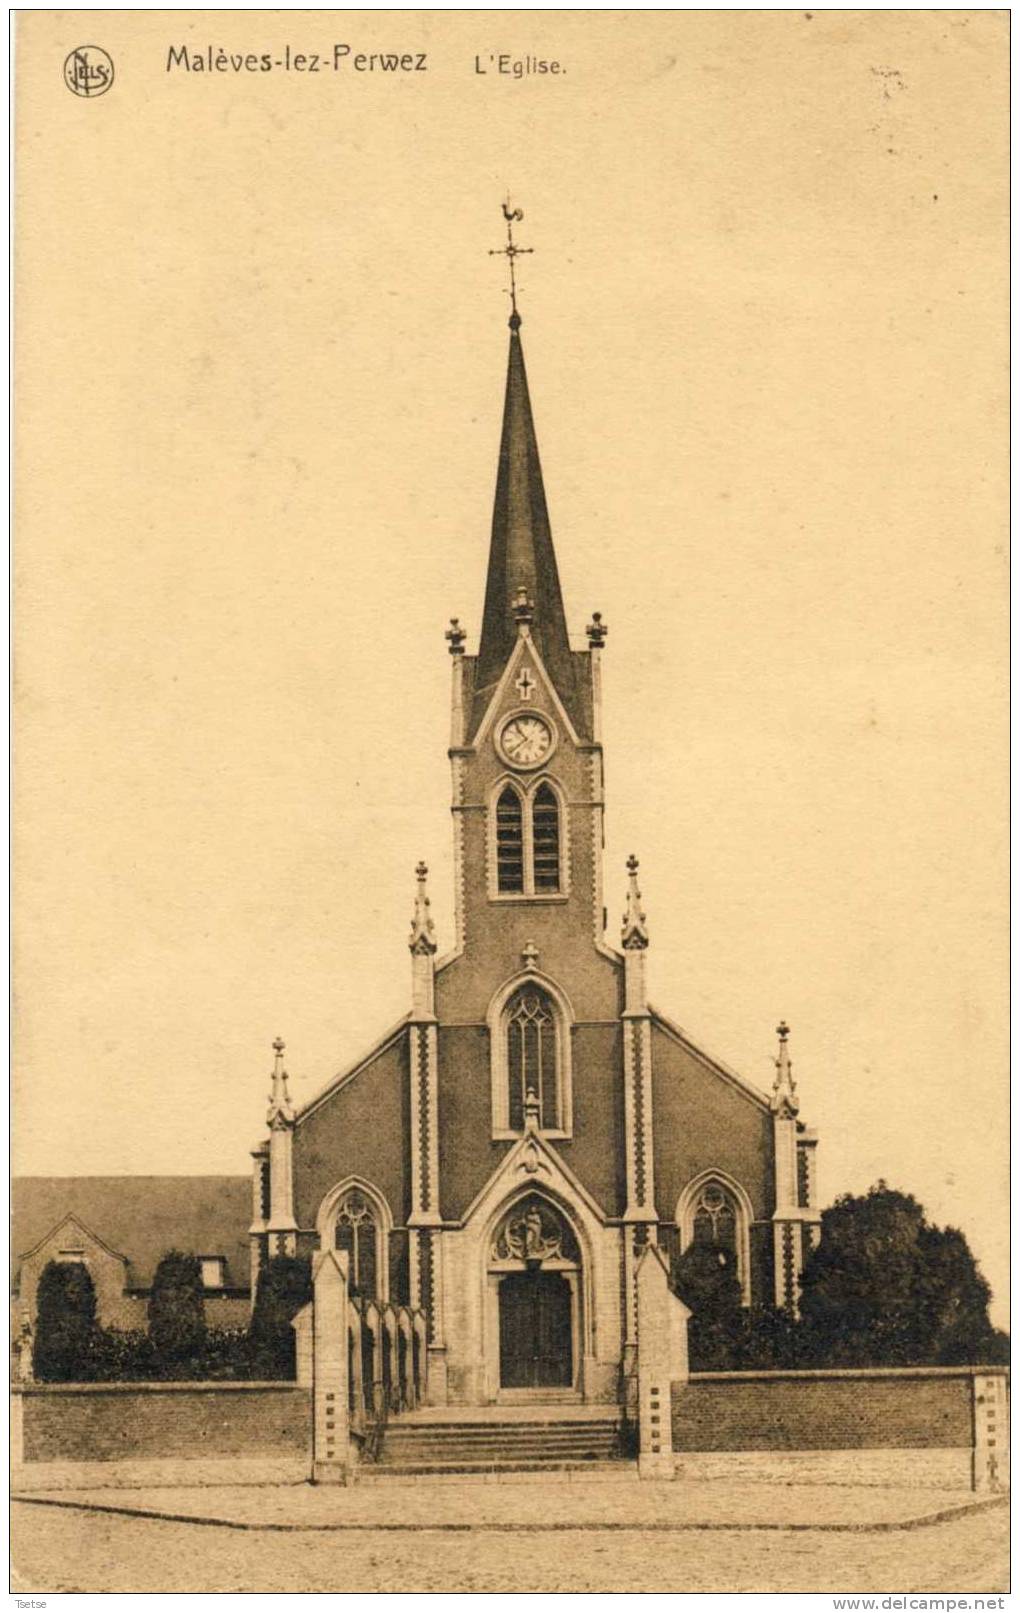 Malèves-lez-Perwez - L'Eglise -1932 - Perwez